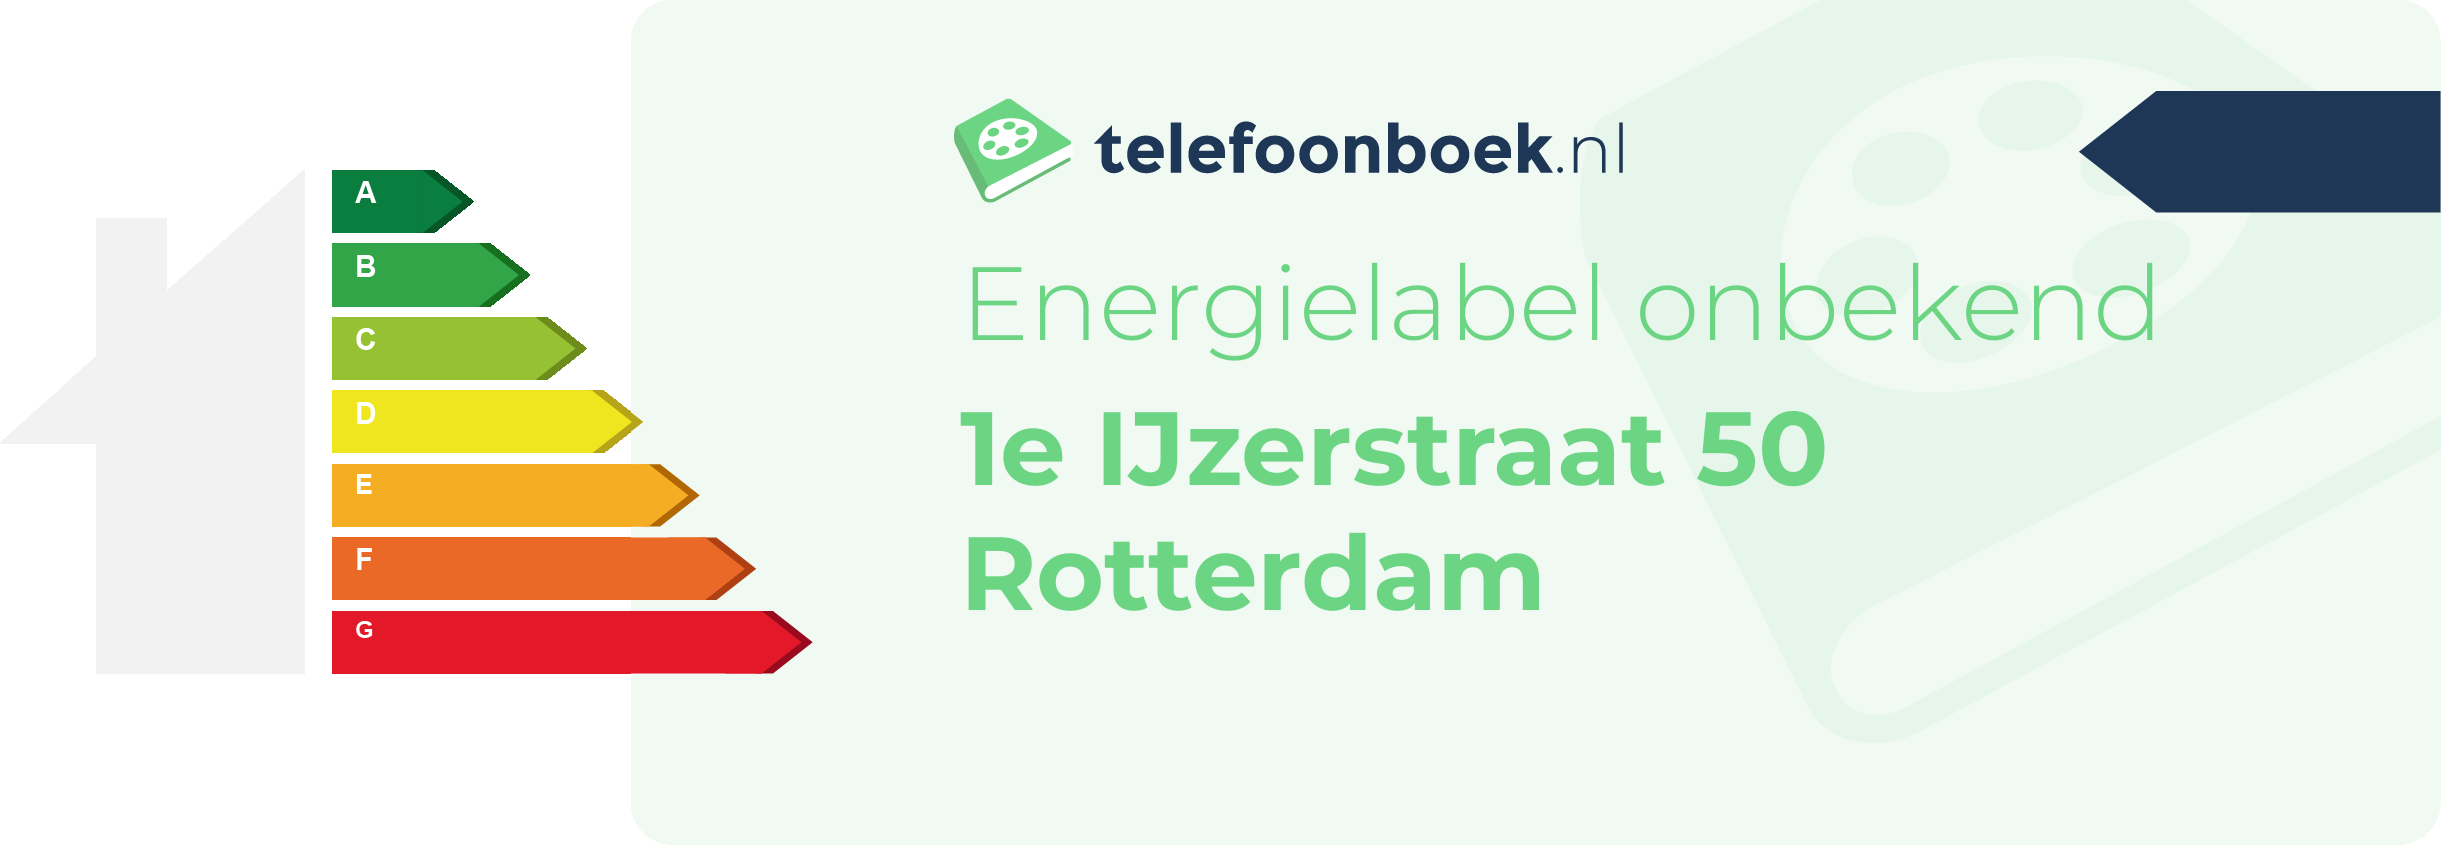 Energielabel 1e IJzerstraat 50 Rotterdam